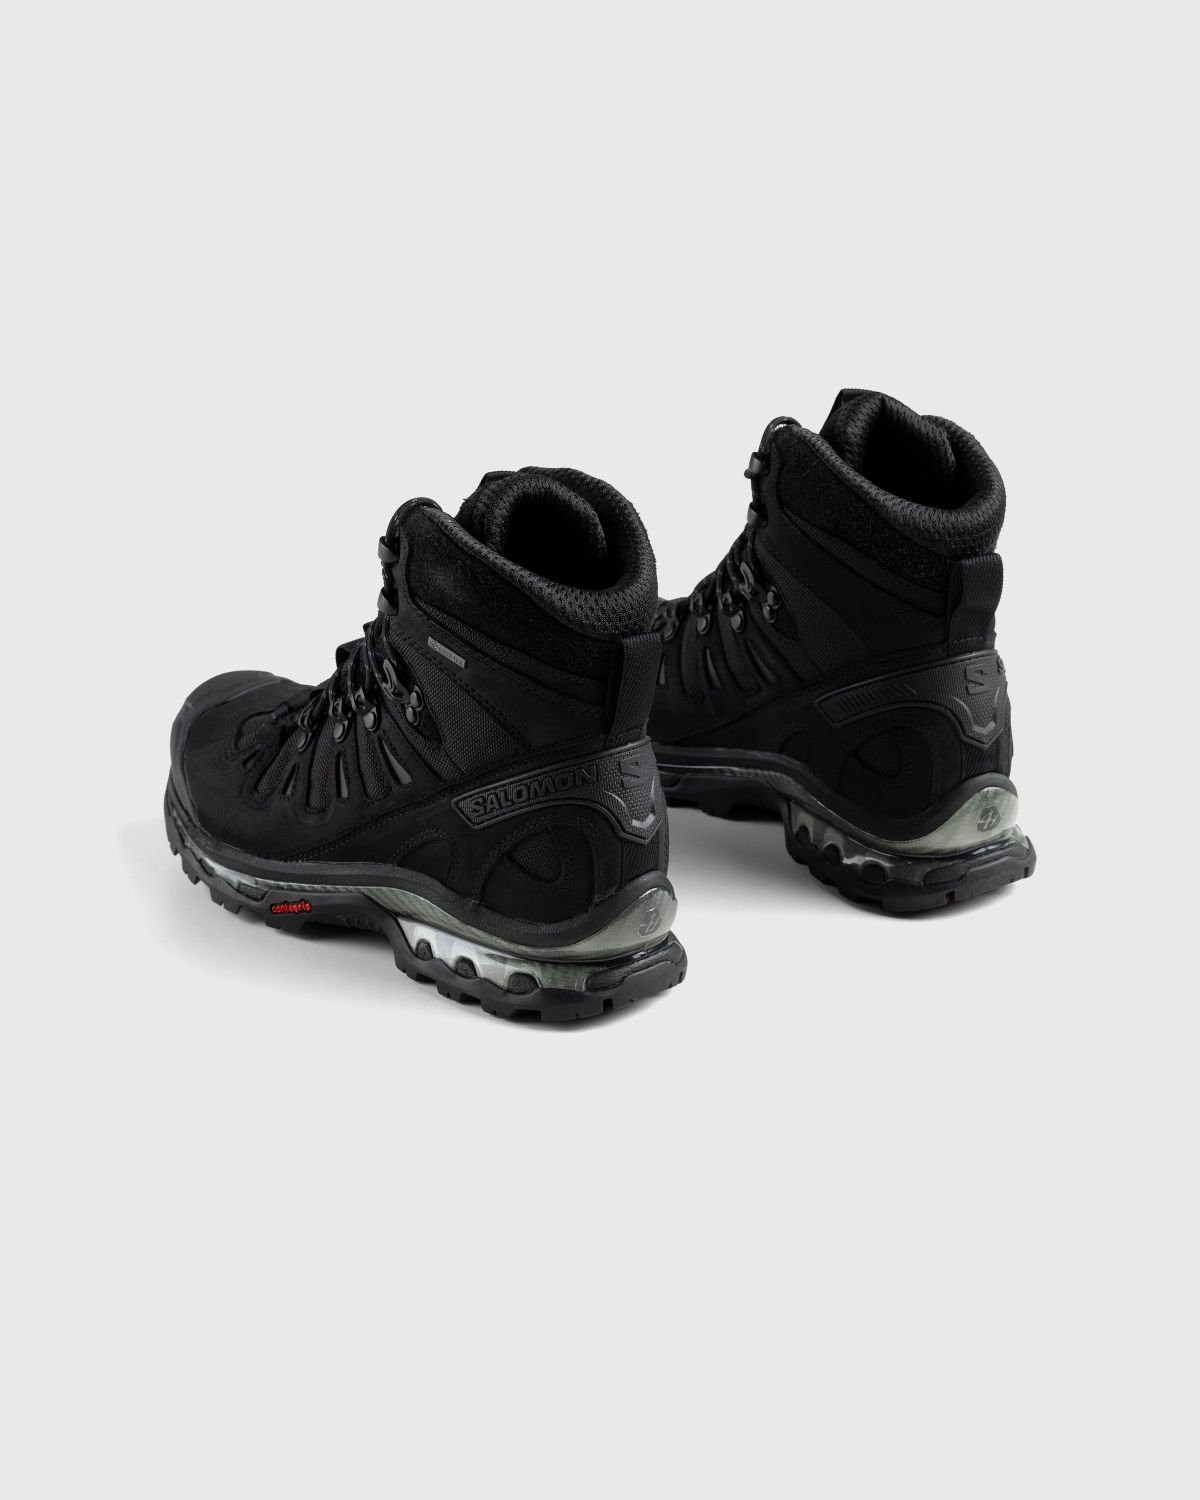 Salomon – Quest 4D GTX Advanced Black - Hiking Boots - Black - Image 4